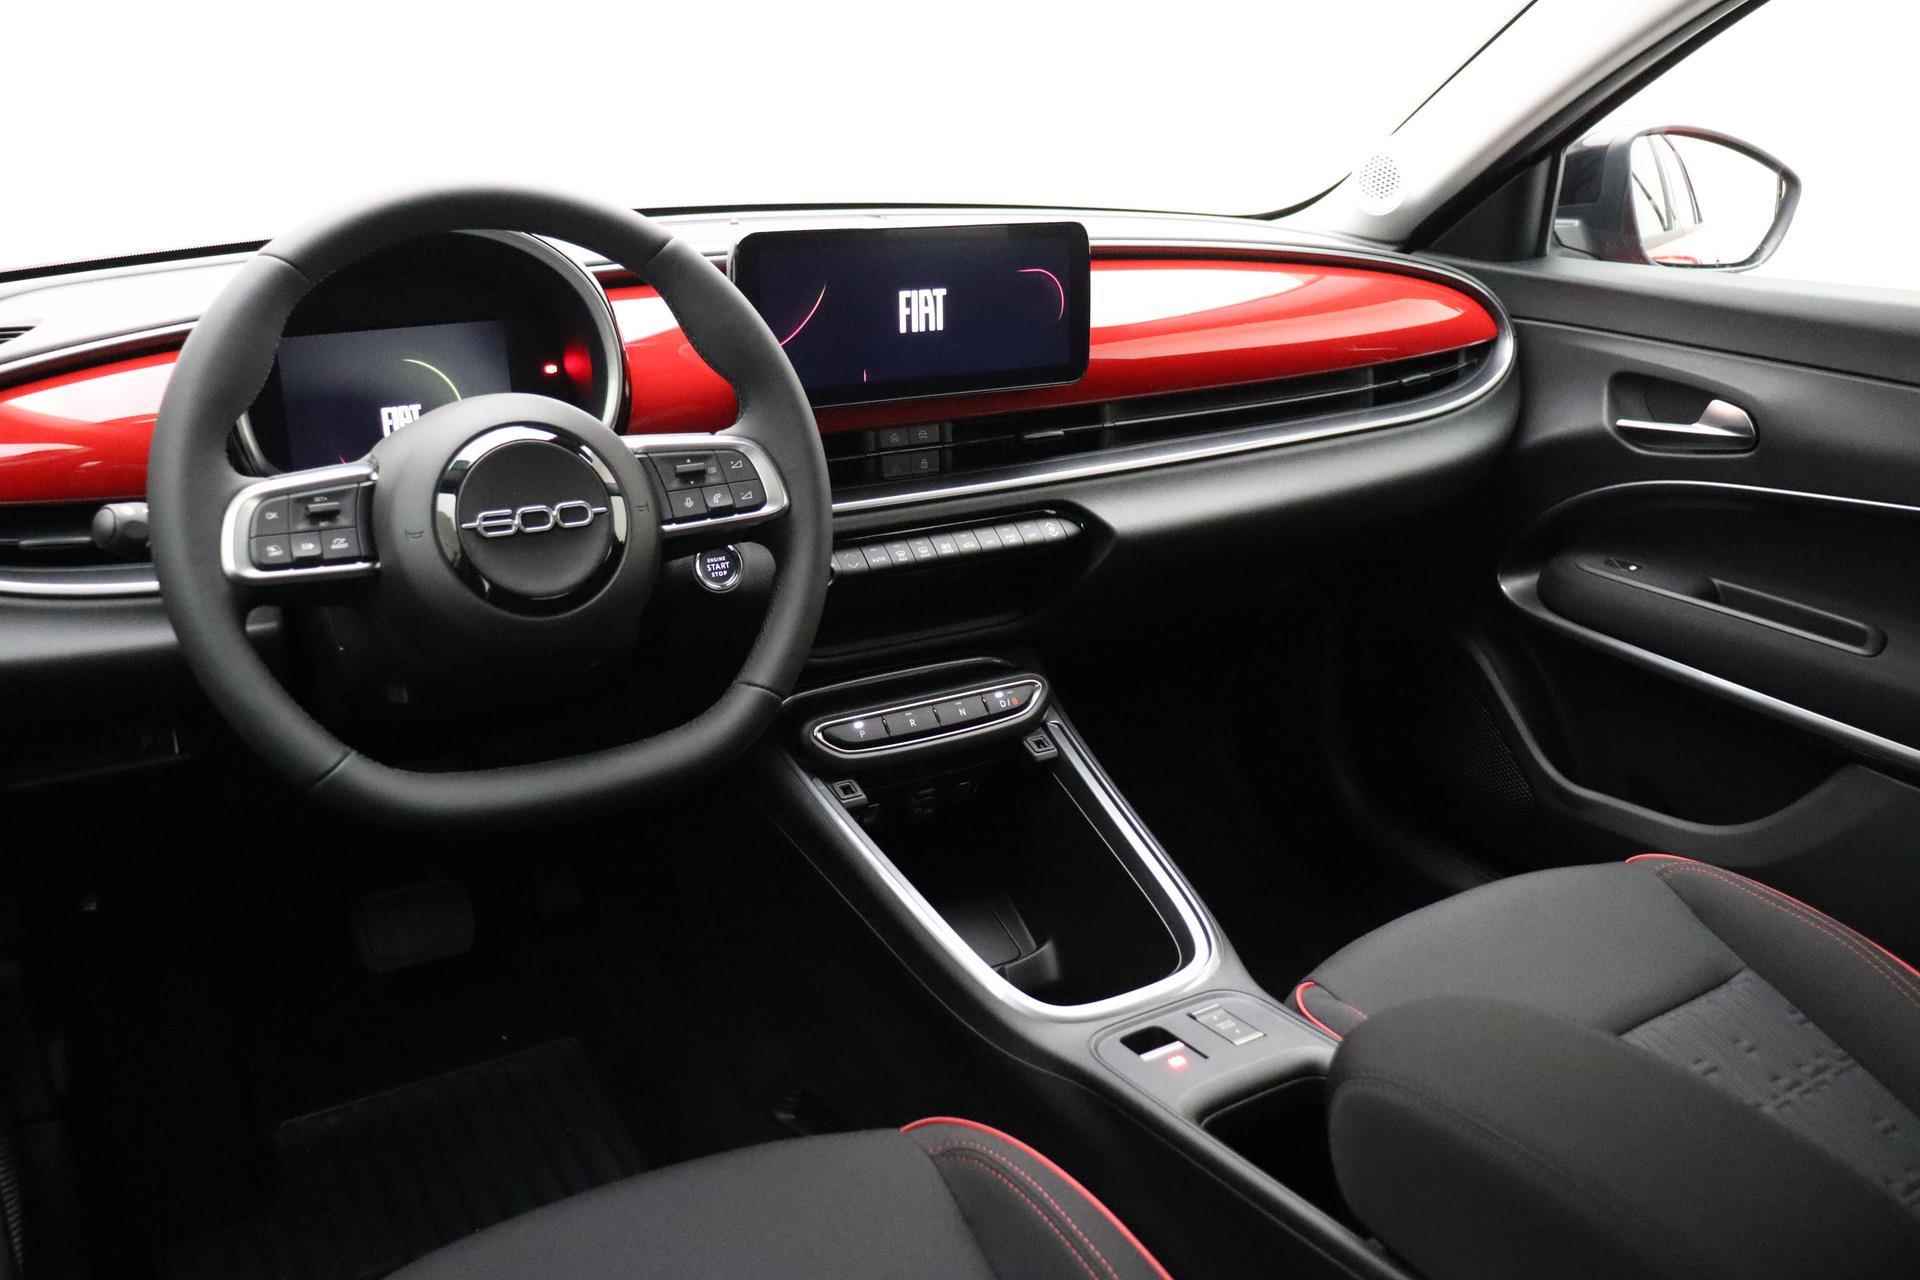 Fiat 600e RED 54 kWh | GRAAG BELLEN VOOR BESCHIKBAARHEID | 409KM ACTIERADIUS (WLTP) | Apple Carplay/Android auto | LED verlichting | Adaptieve cruise control | Lane Assist | - 8/38